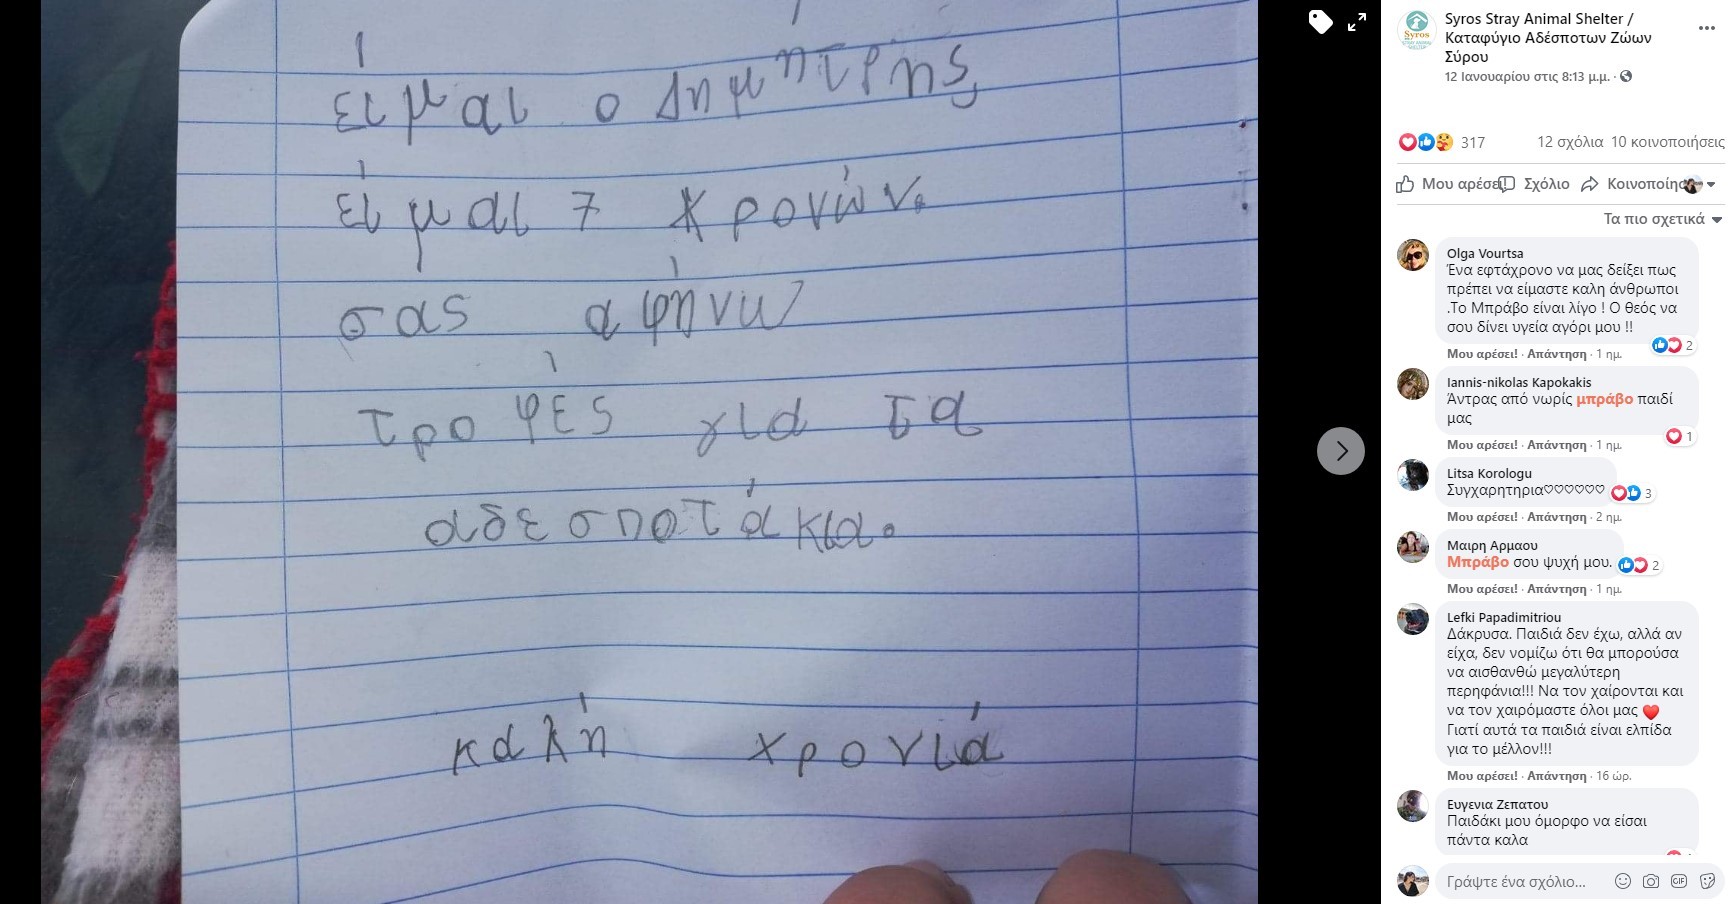 Υπάρχει ελπίδα! Ένας 7χρονος από την Σύρο έδωσε το χαρτζιλίκι των γιορτών για να ταΐσει αδέσποτα